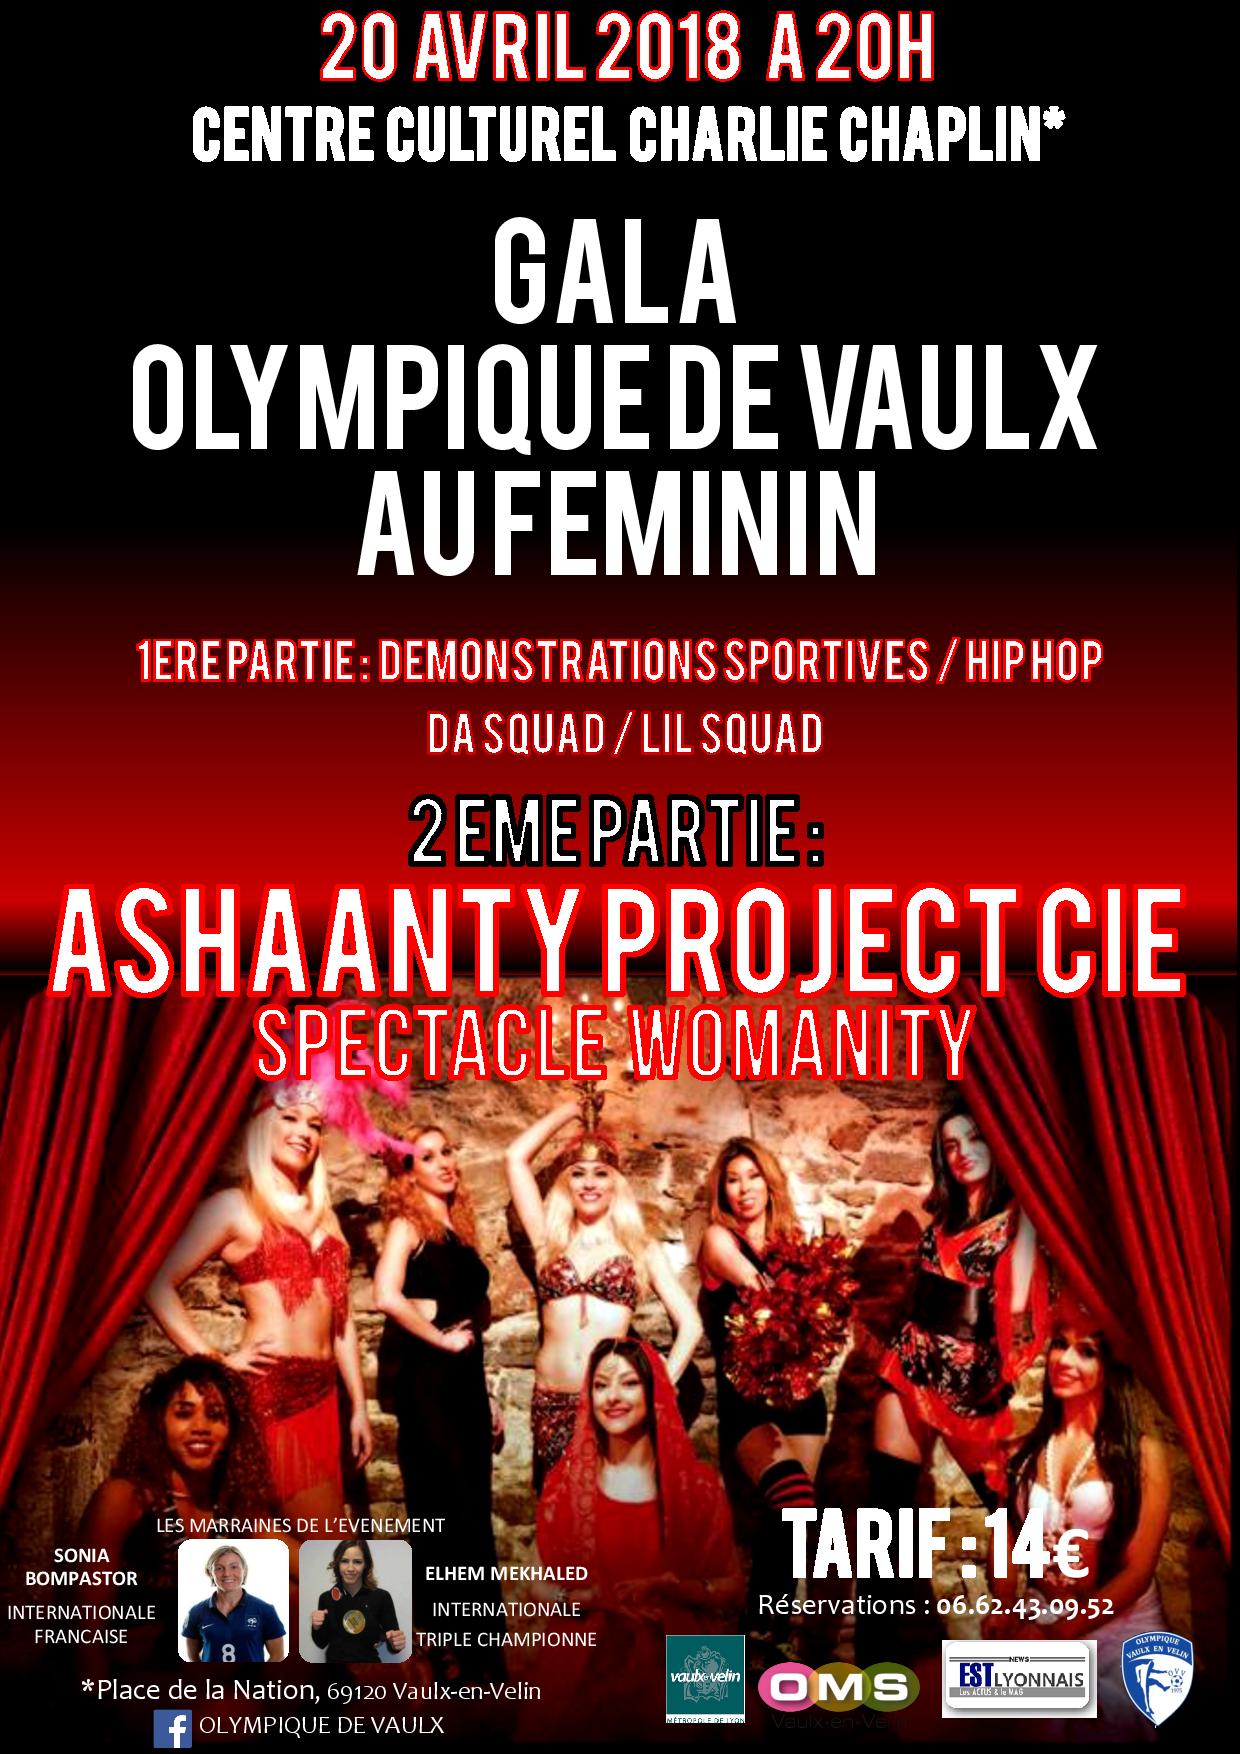 VAULX-EN-VELIN | L’Olympique de Vaulx organise un gala au féminin